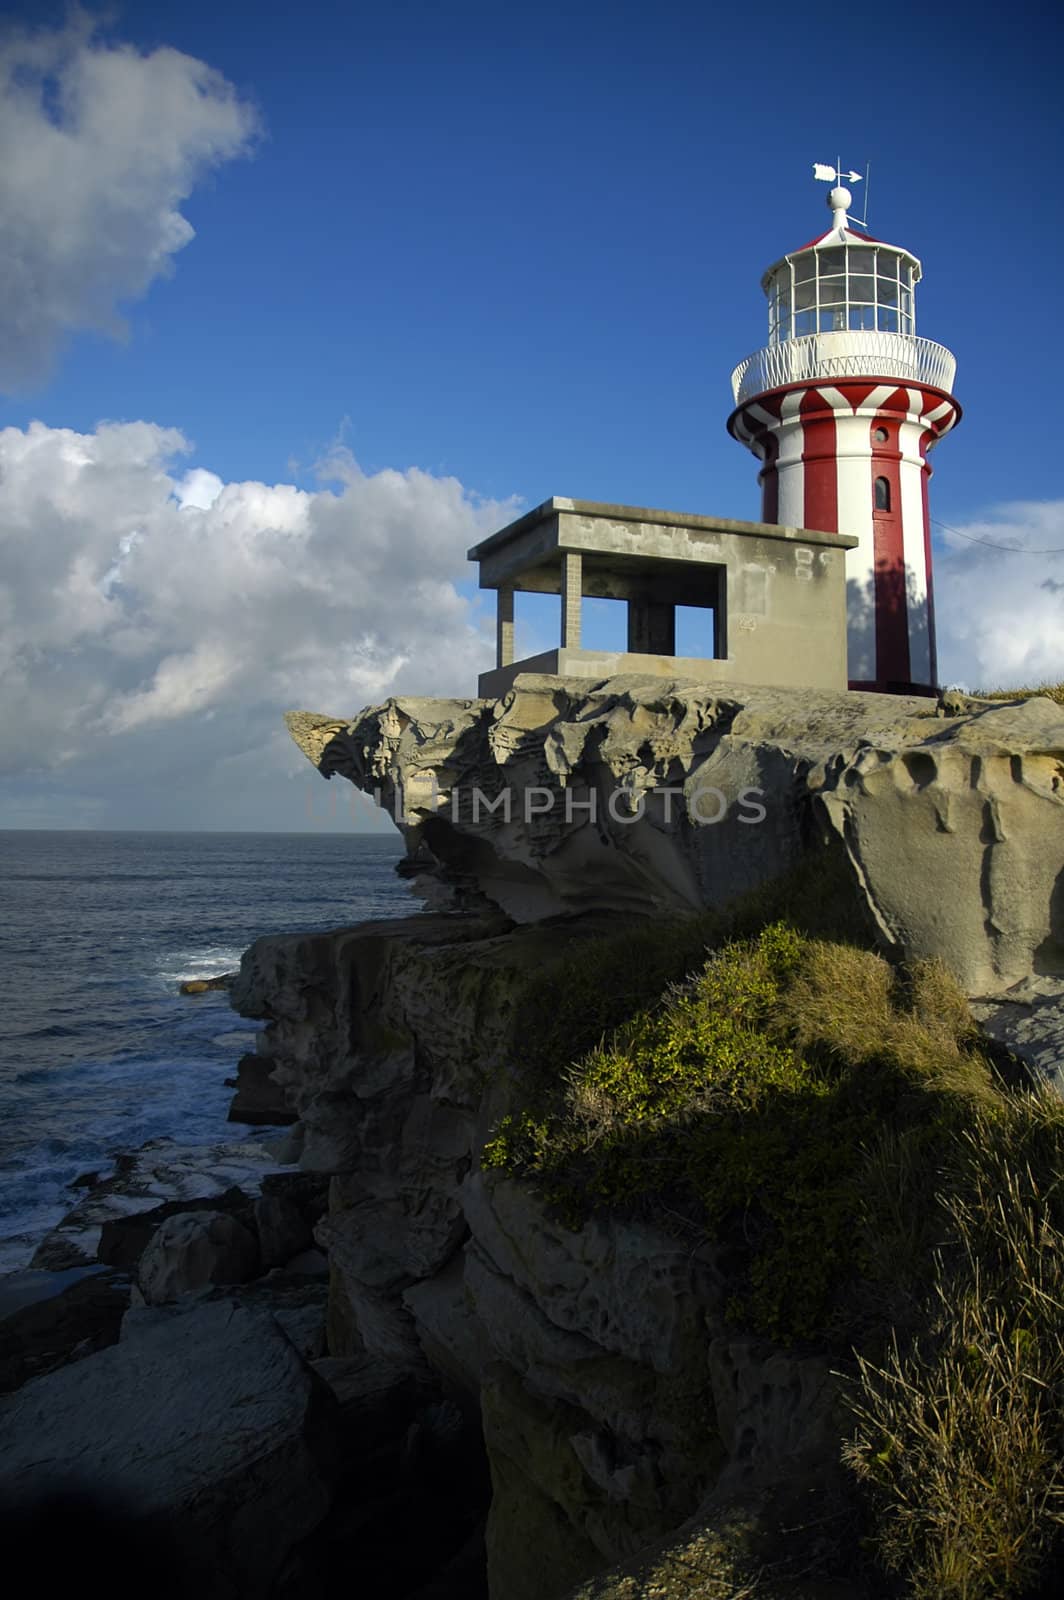 sydney lighthouse by rorem